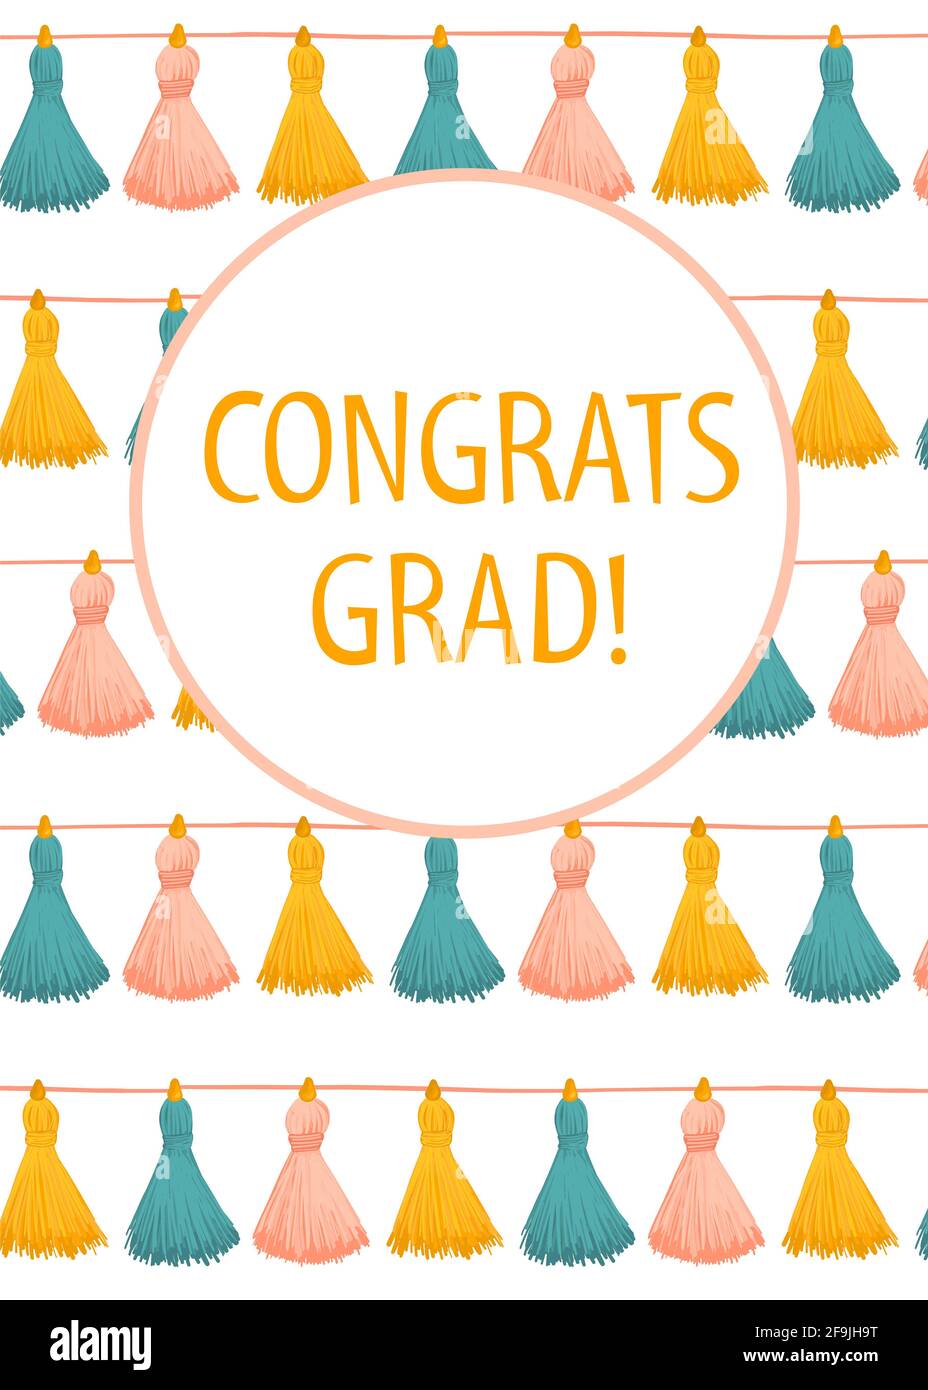 Glückwünsche Graduate Quaste Girlande Karte Vorlage. Herzlichen Glückwunsch Grad Postkarte Grußkarte vertikal mit niedlichen handgezeichneten Quasten. Zeremonie Stockfoto